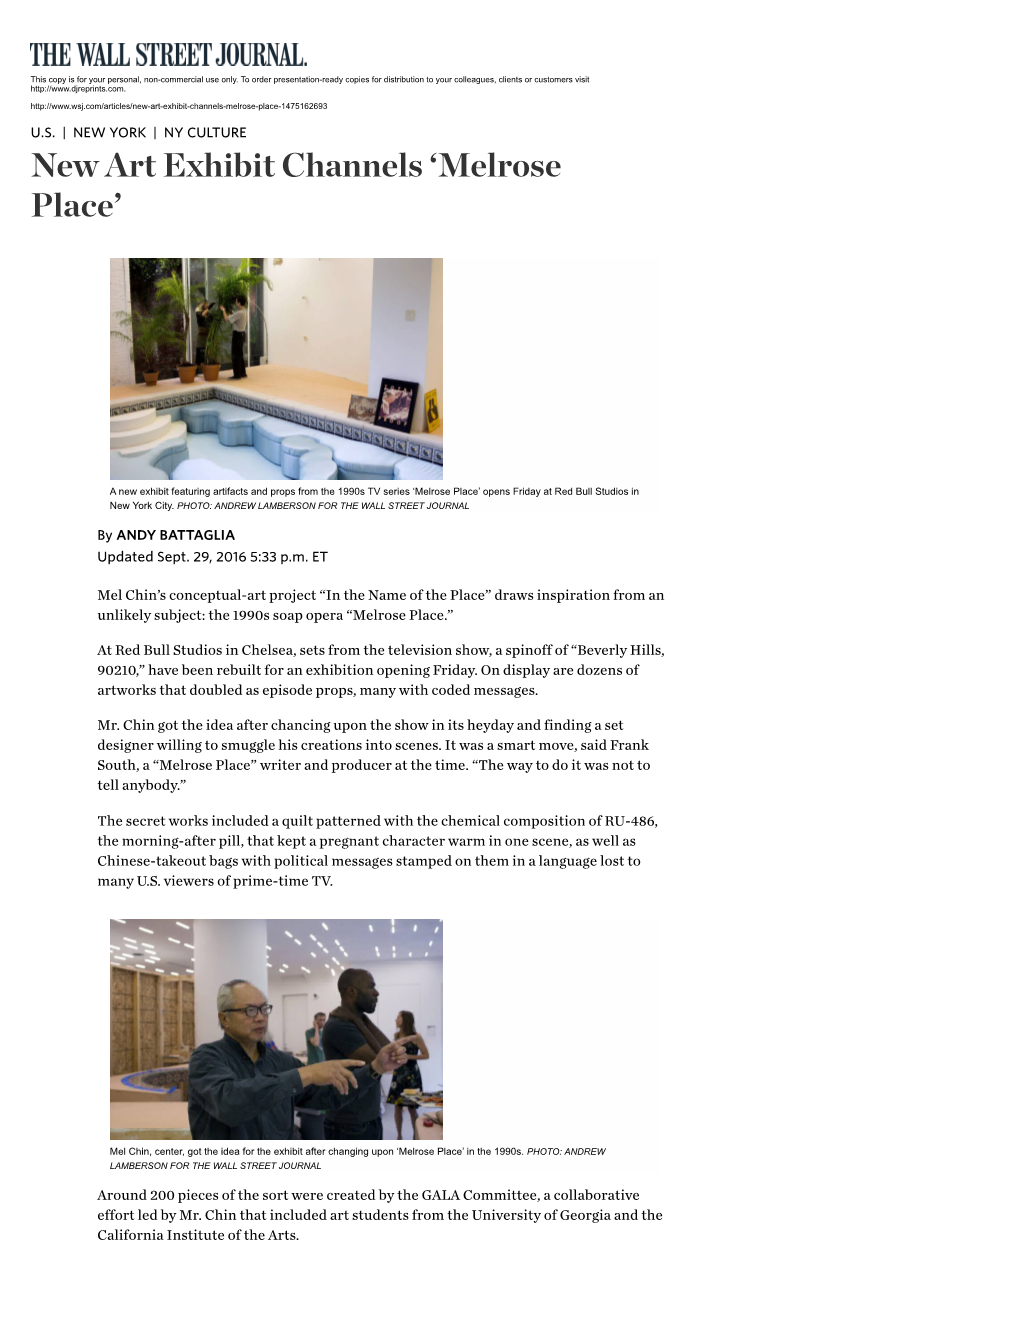 New Art Exhibit Channels 'Melrose Place'